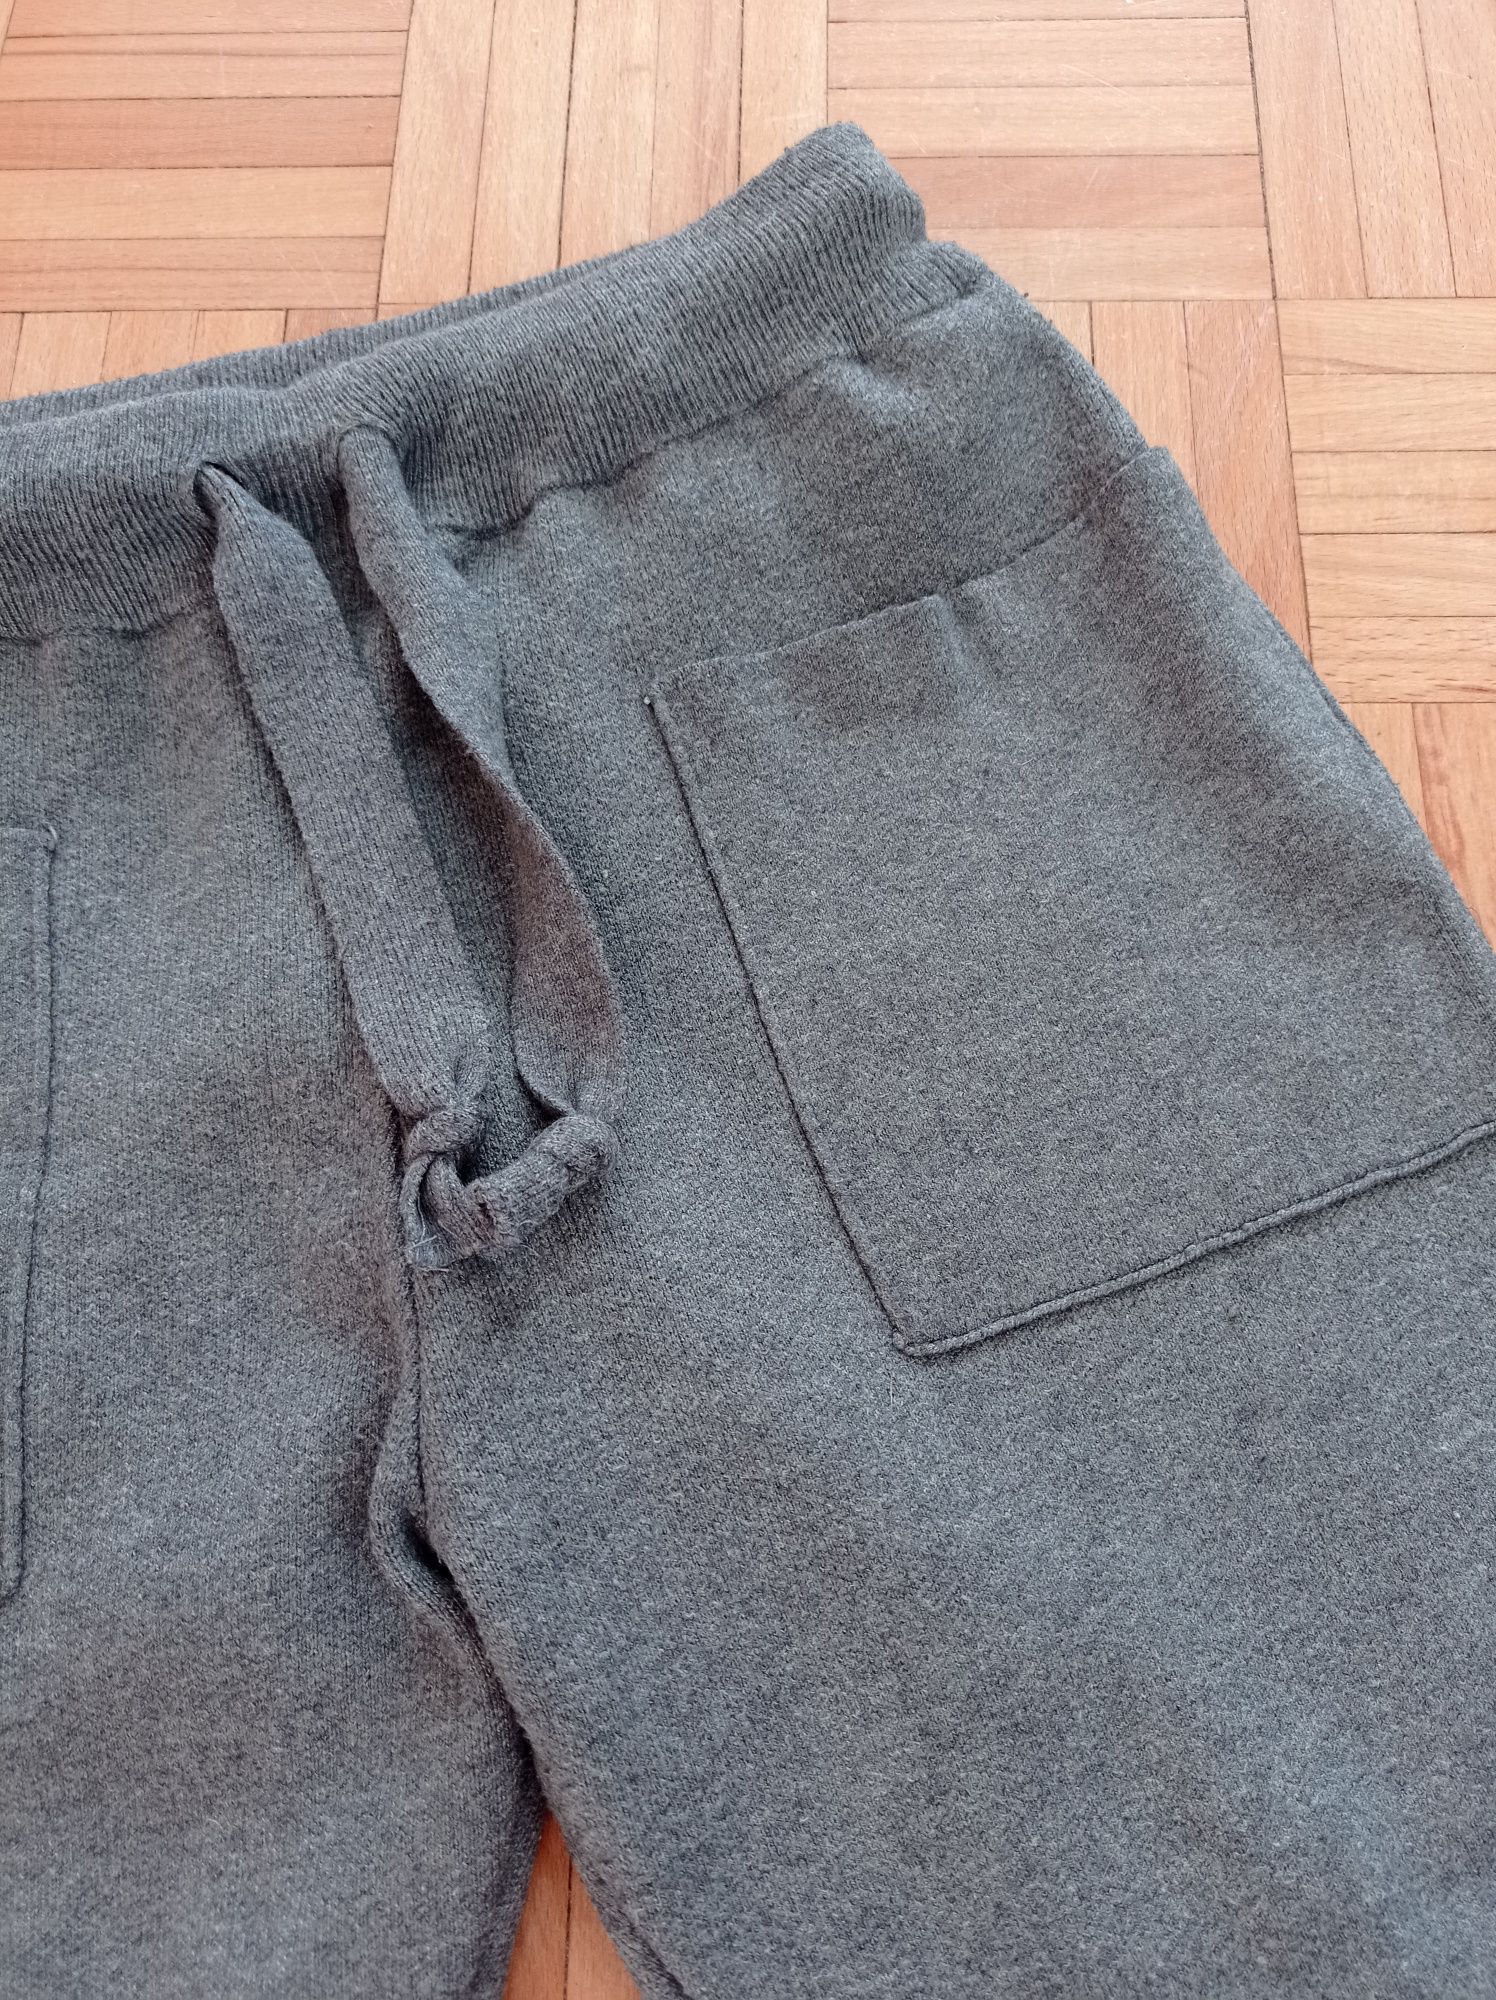 Spodnie dresowe Zara Knit